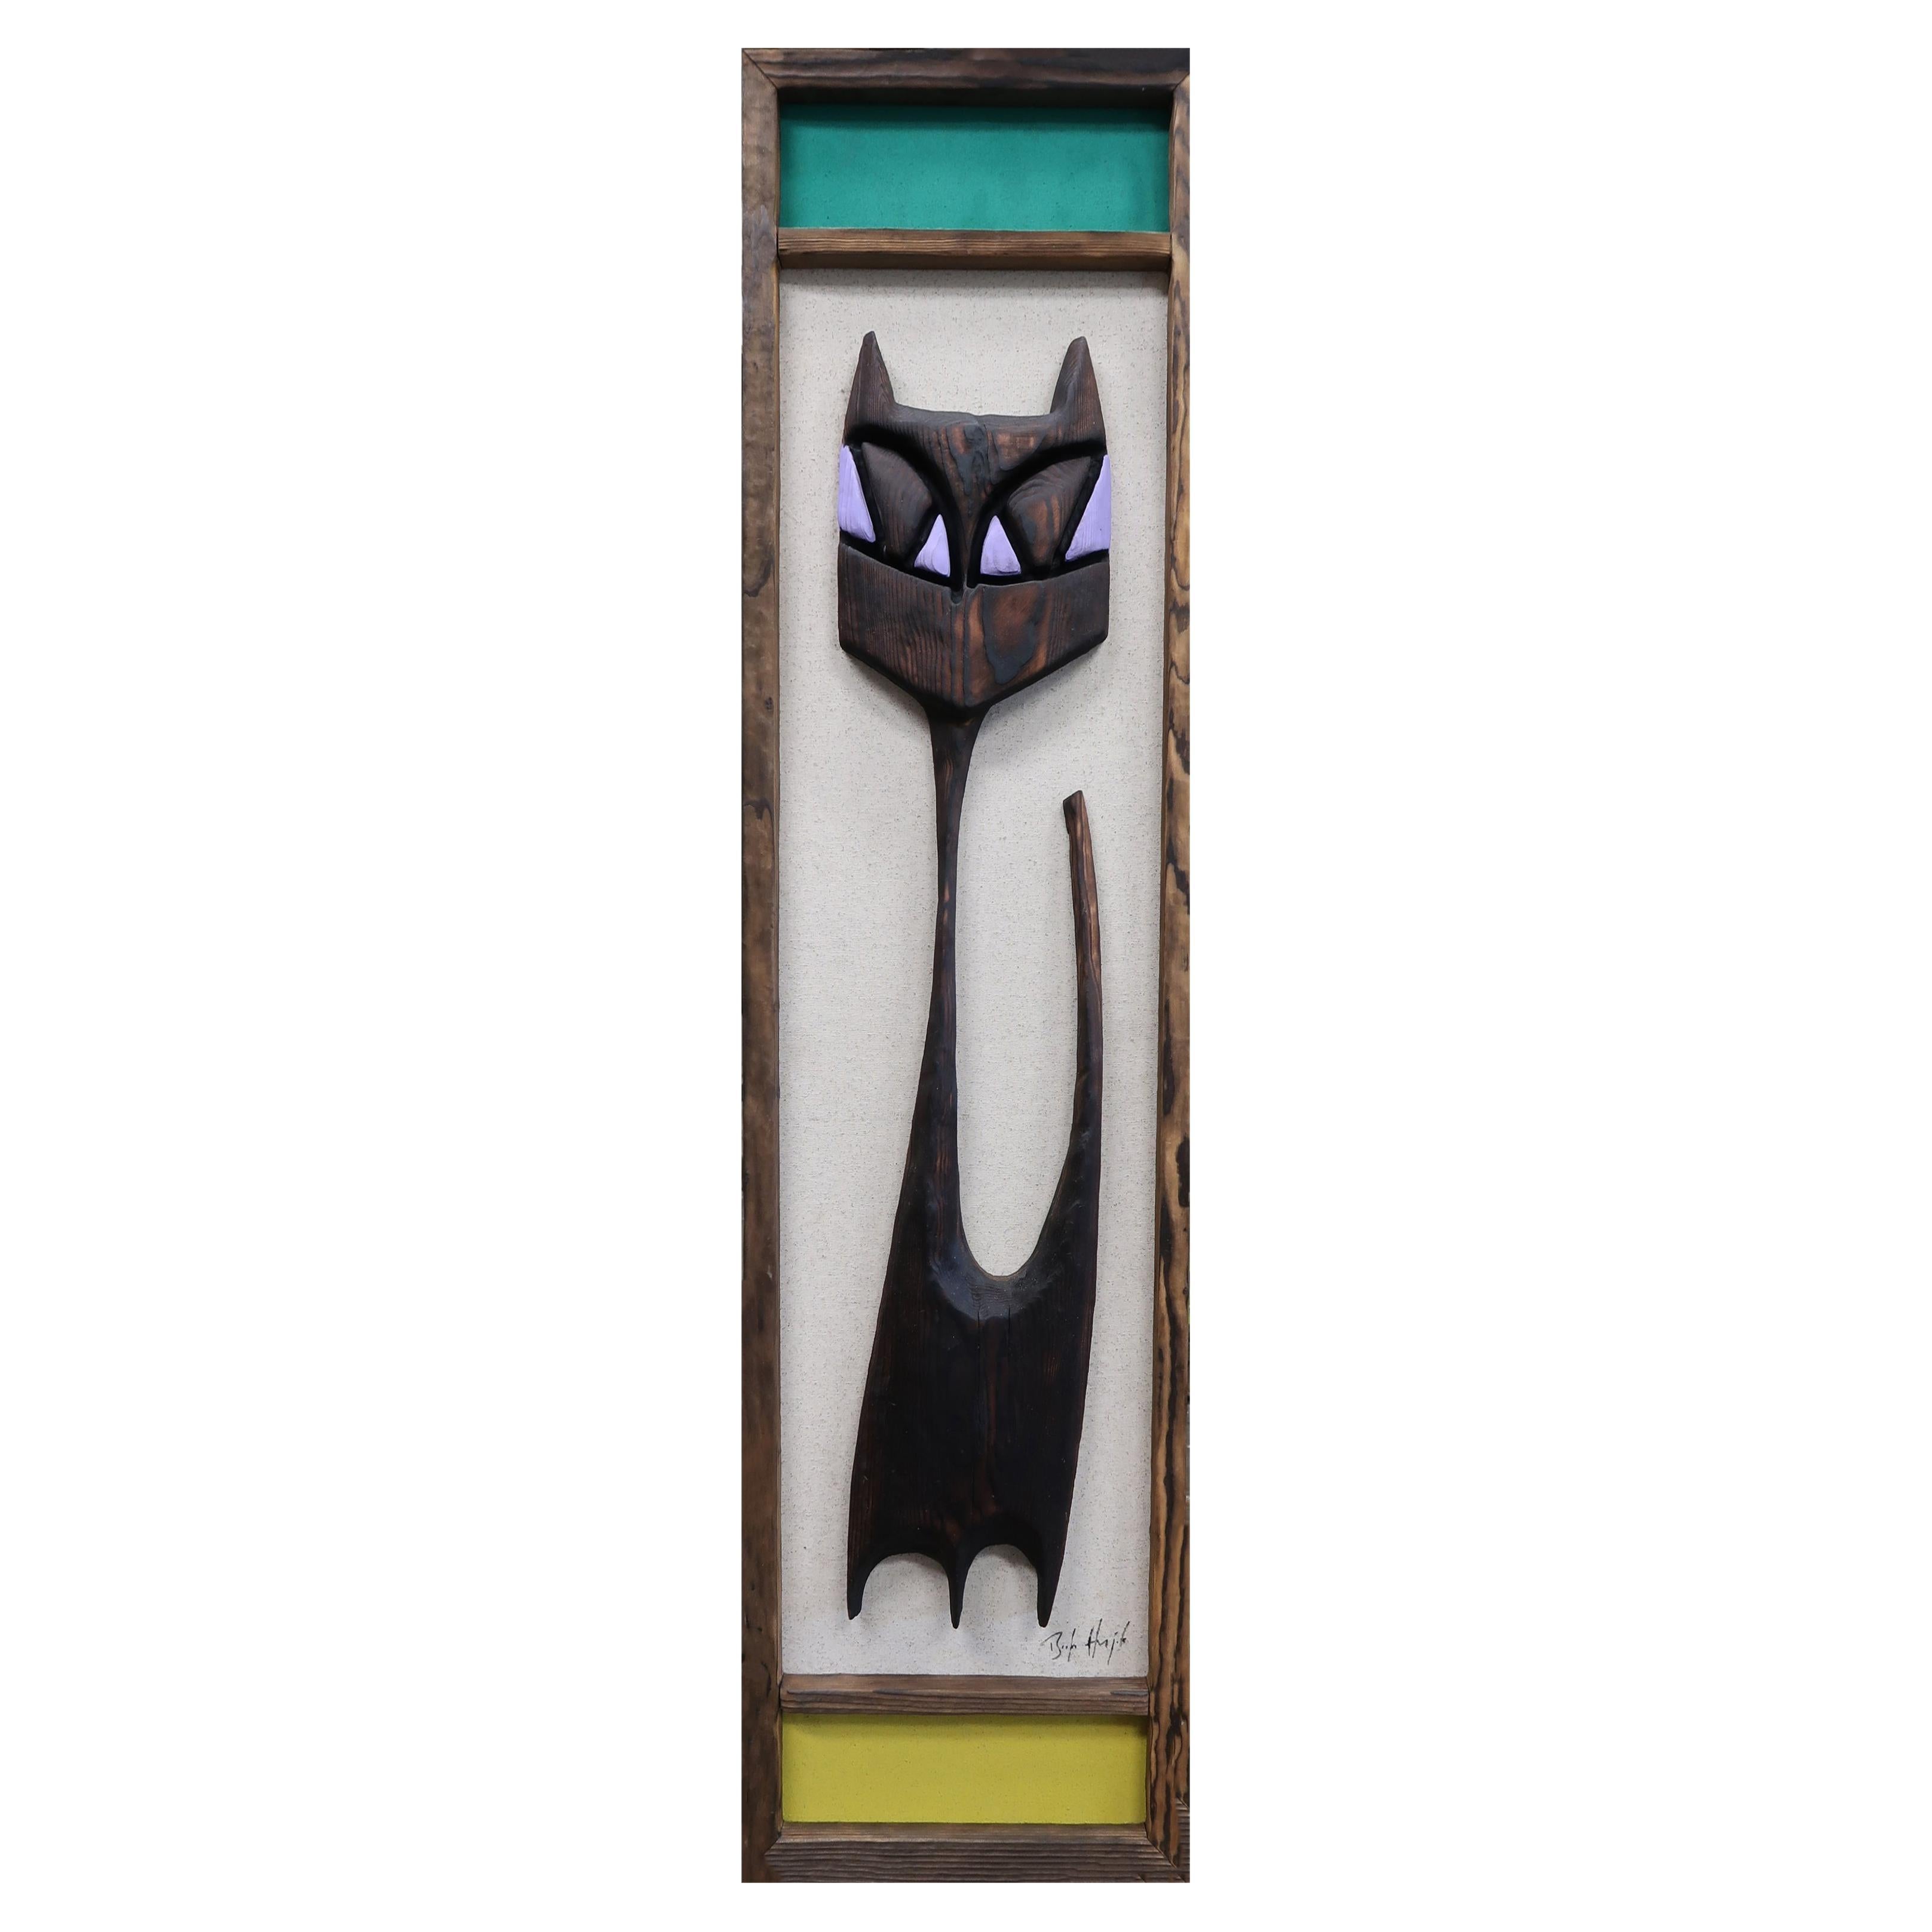 Bosko Hrnjak Original Modernist Framed Art Tall Tabby Cat Wall Sculpture Carving